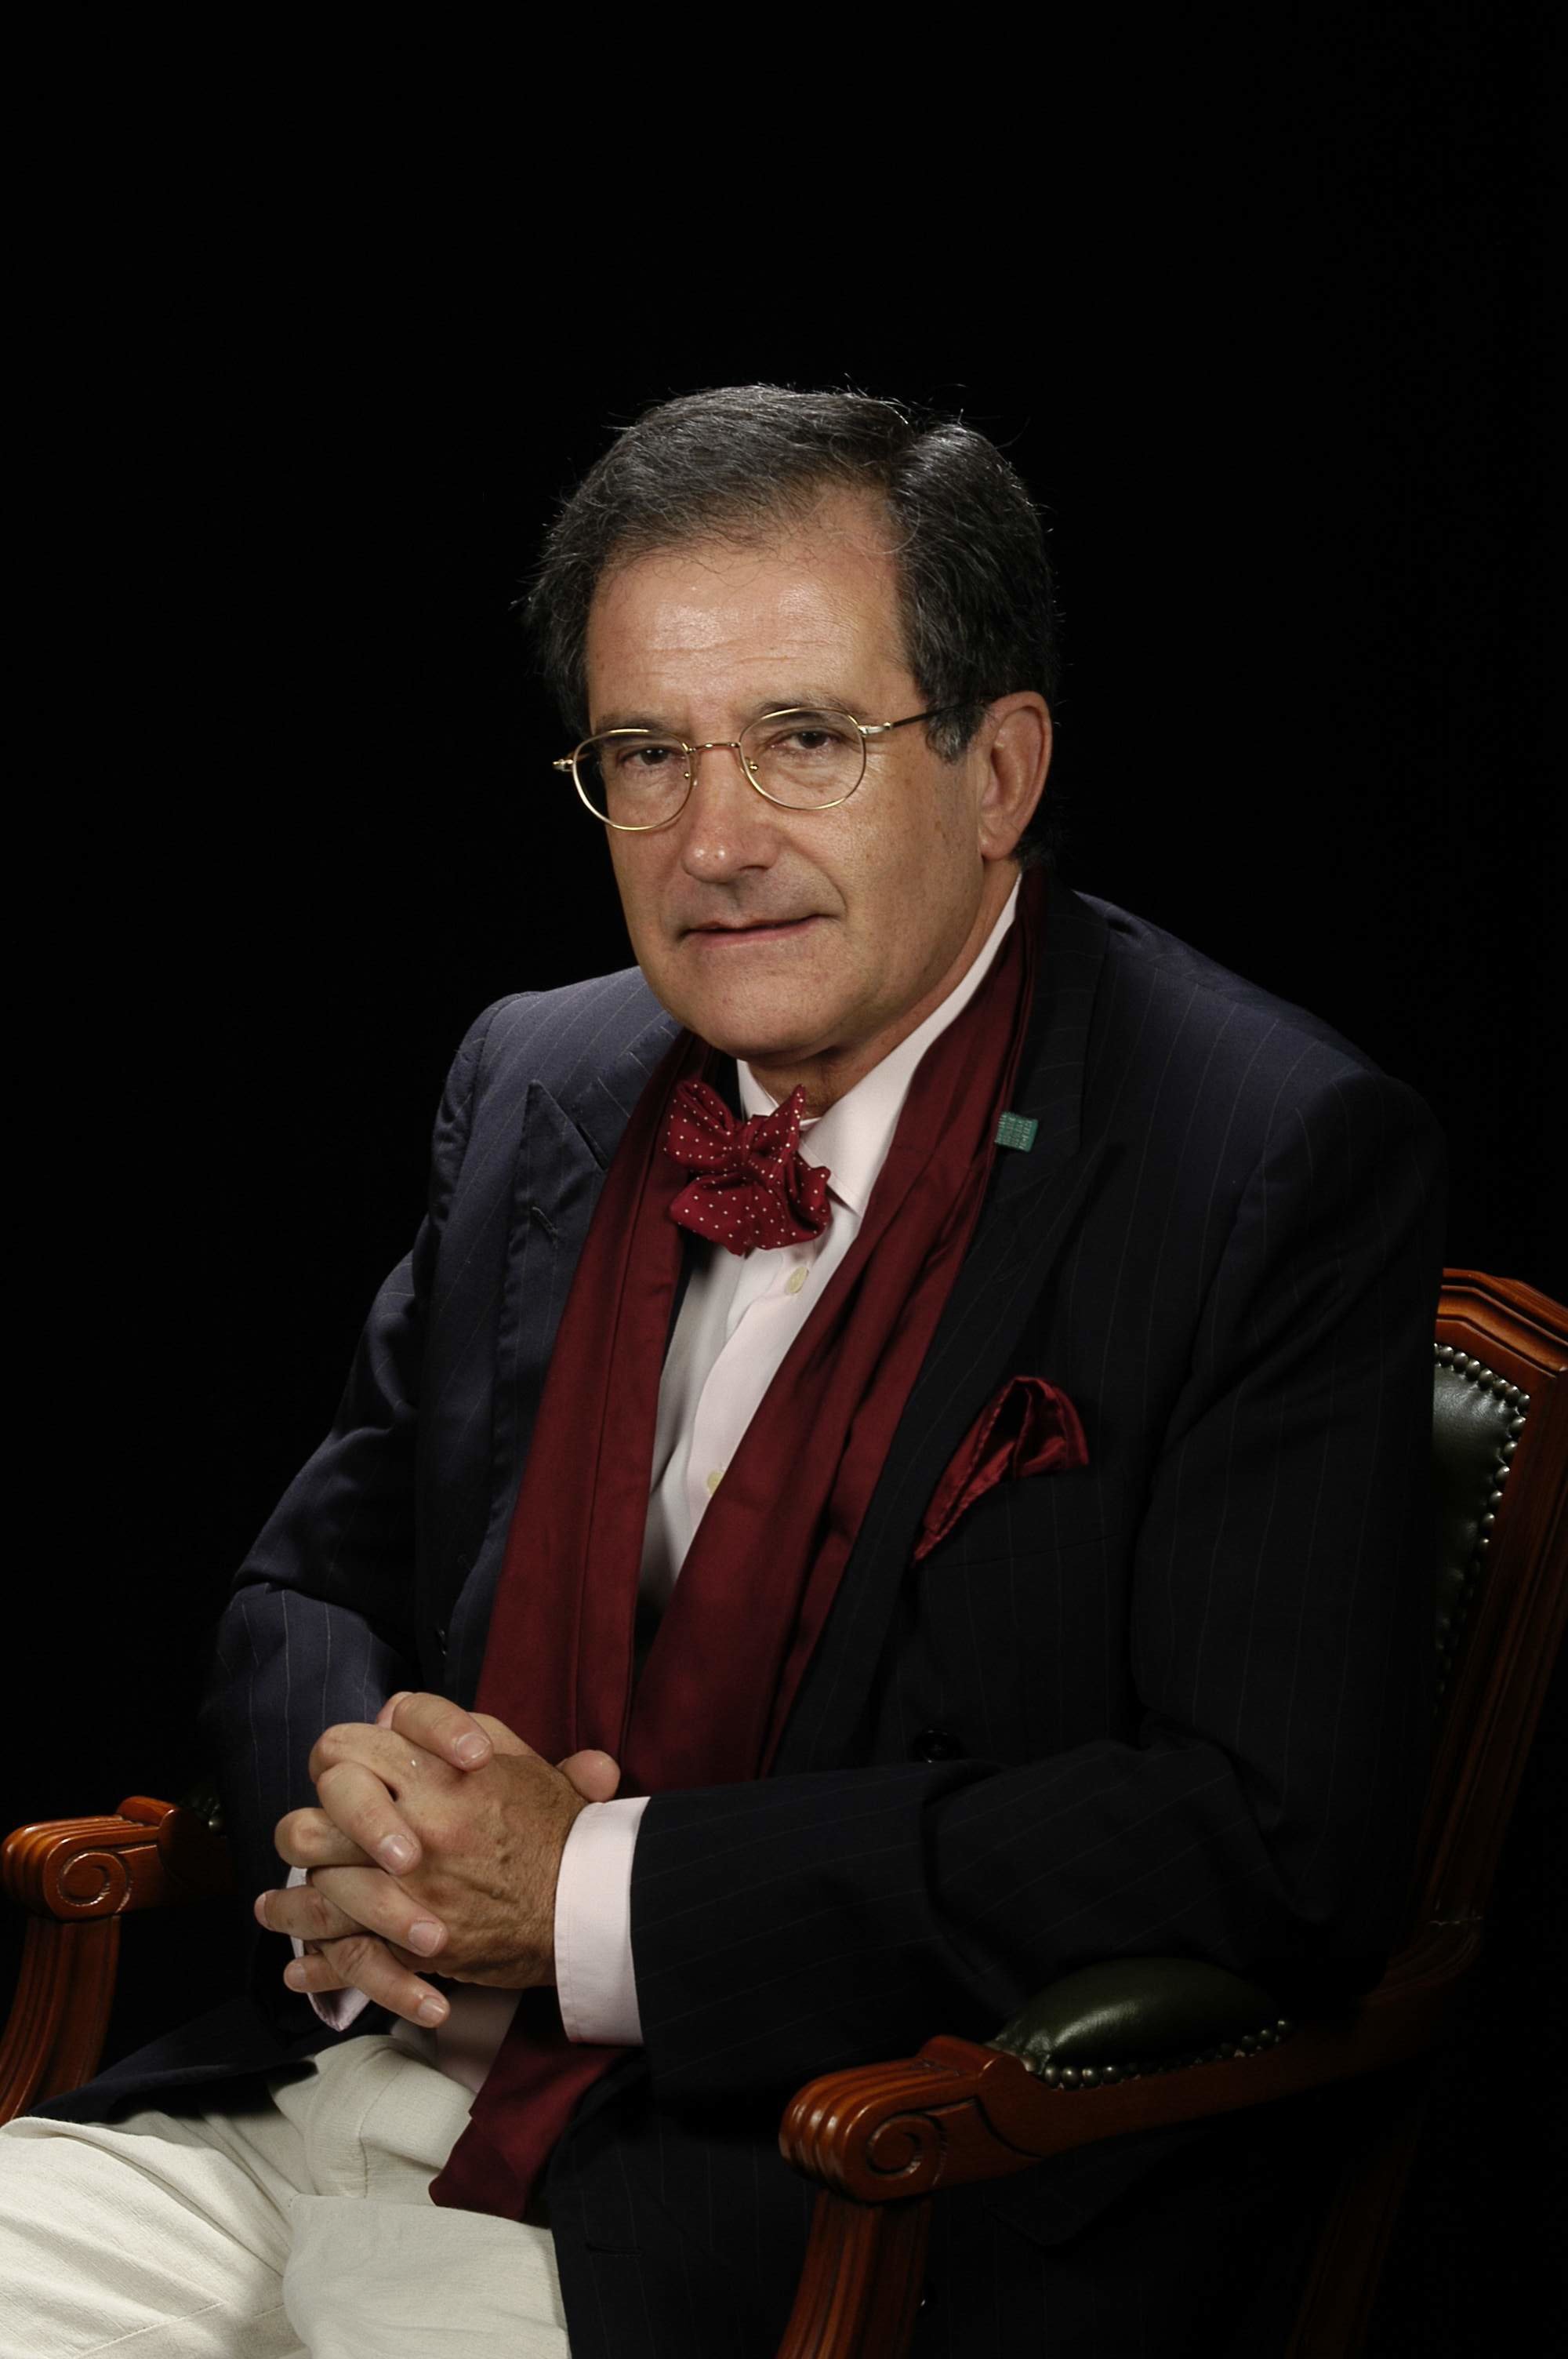 Dr. Leopoldo Ortega-Monasterio